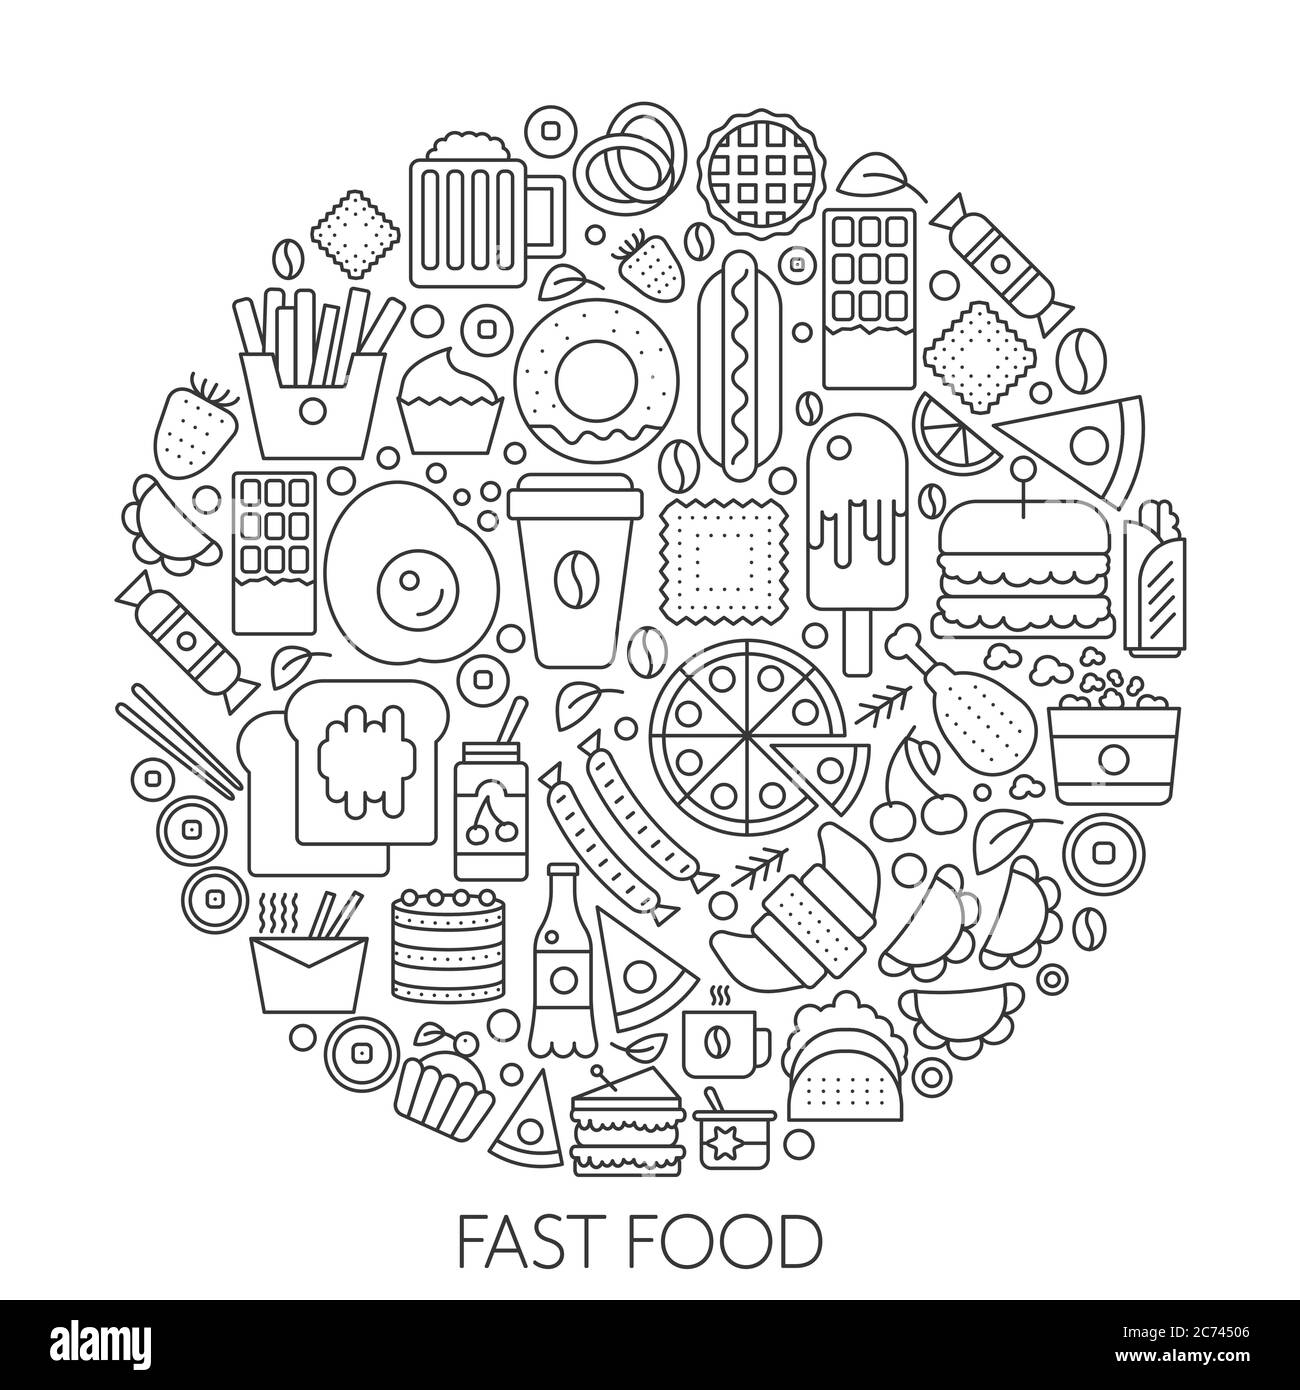 Icone fast food in cerchio - infografica di illustrazioni vettoriali per copertina, emblema, badge. Insieme di icone di contorno Illustrazione Vettoriale